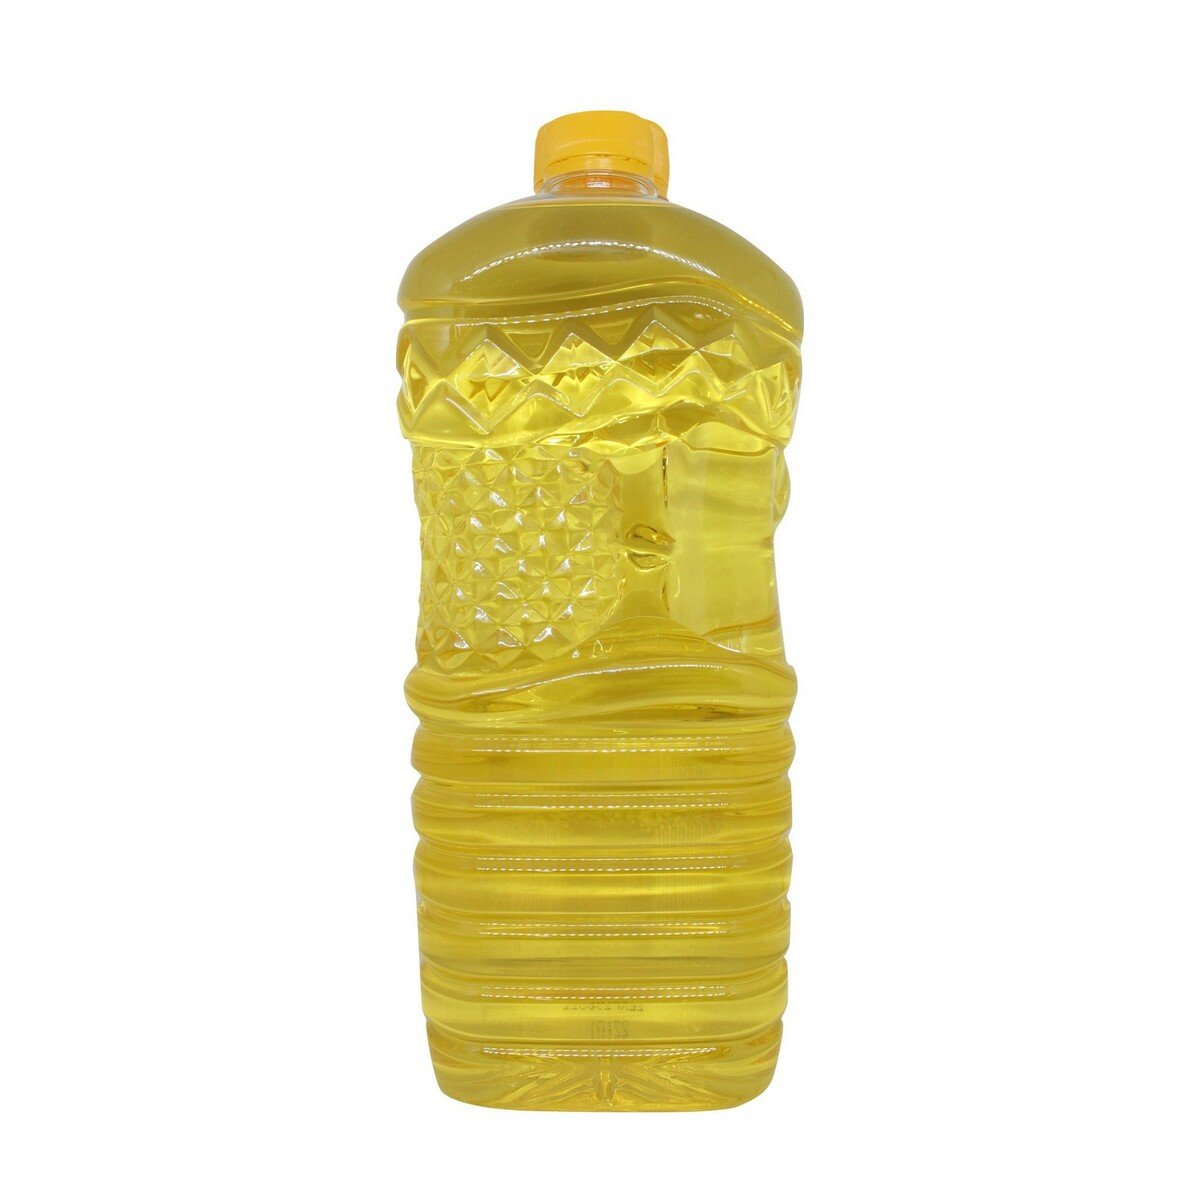 Sunco Minyak Goreng Botol 1Litre